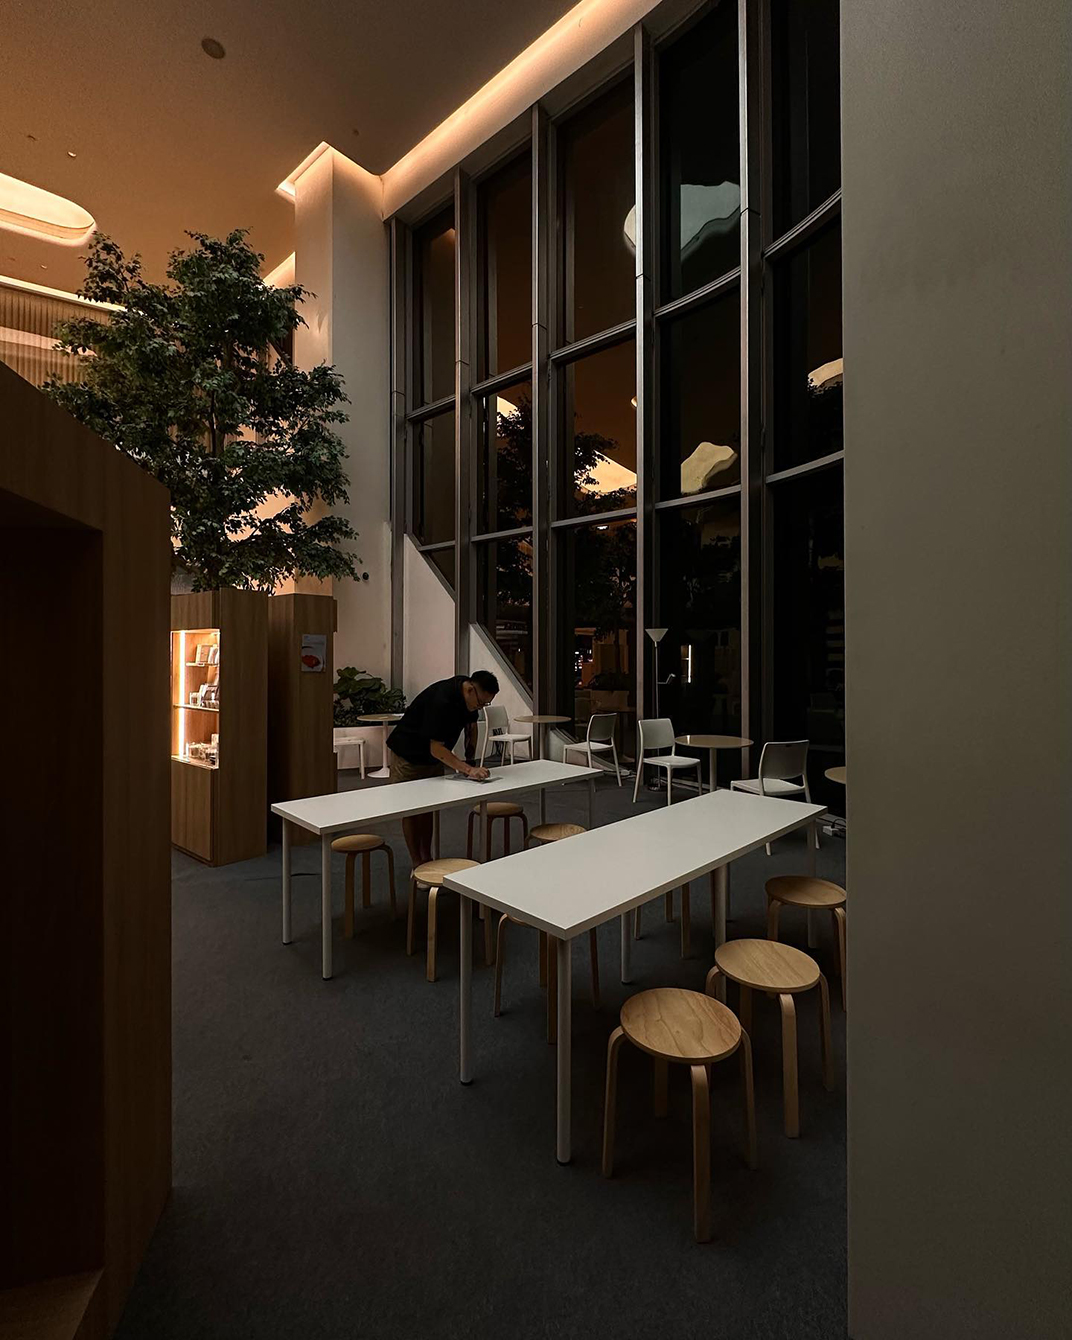 咖啡吧、慢吧、商品店空间 泰国 曼谷 北京 上海 珠海 广州 武汉 杭州 佛山 香港 澳门 logo设计 vi设计 空间设计